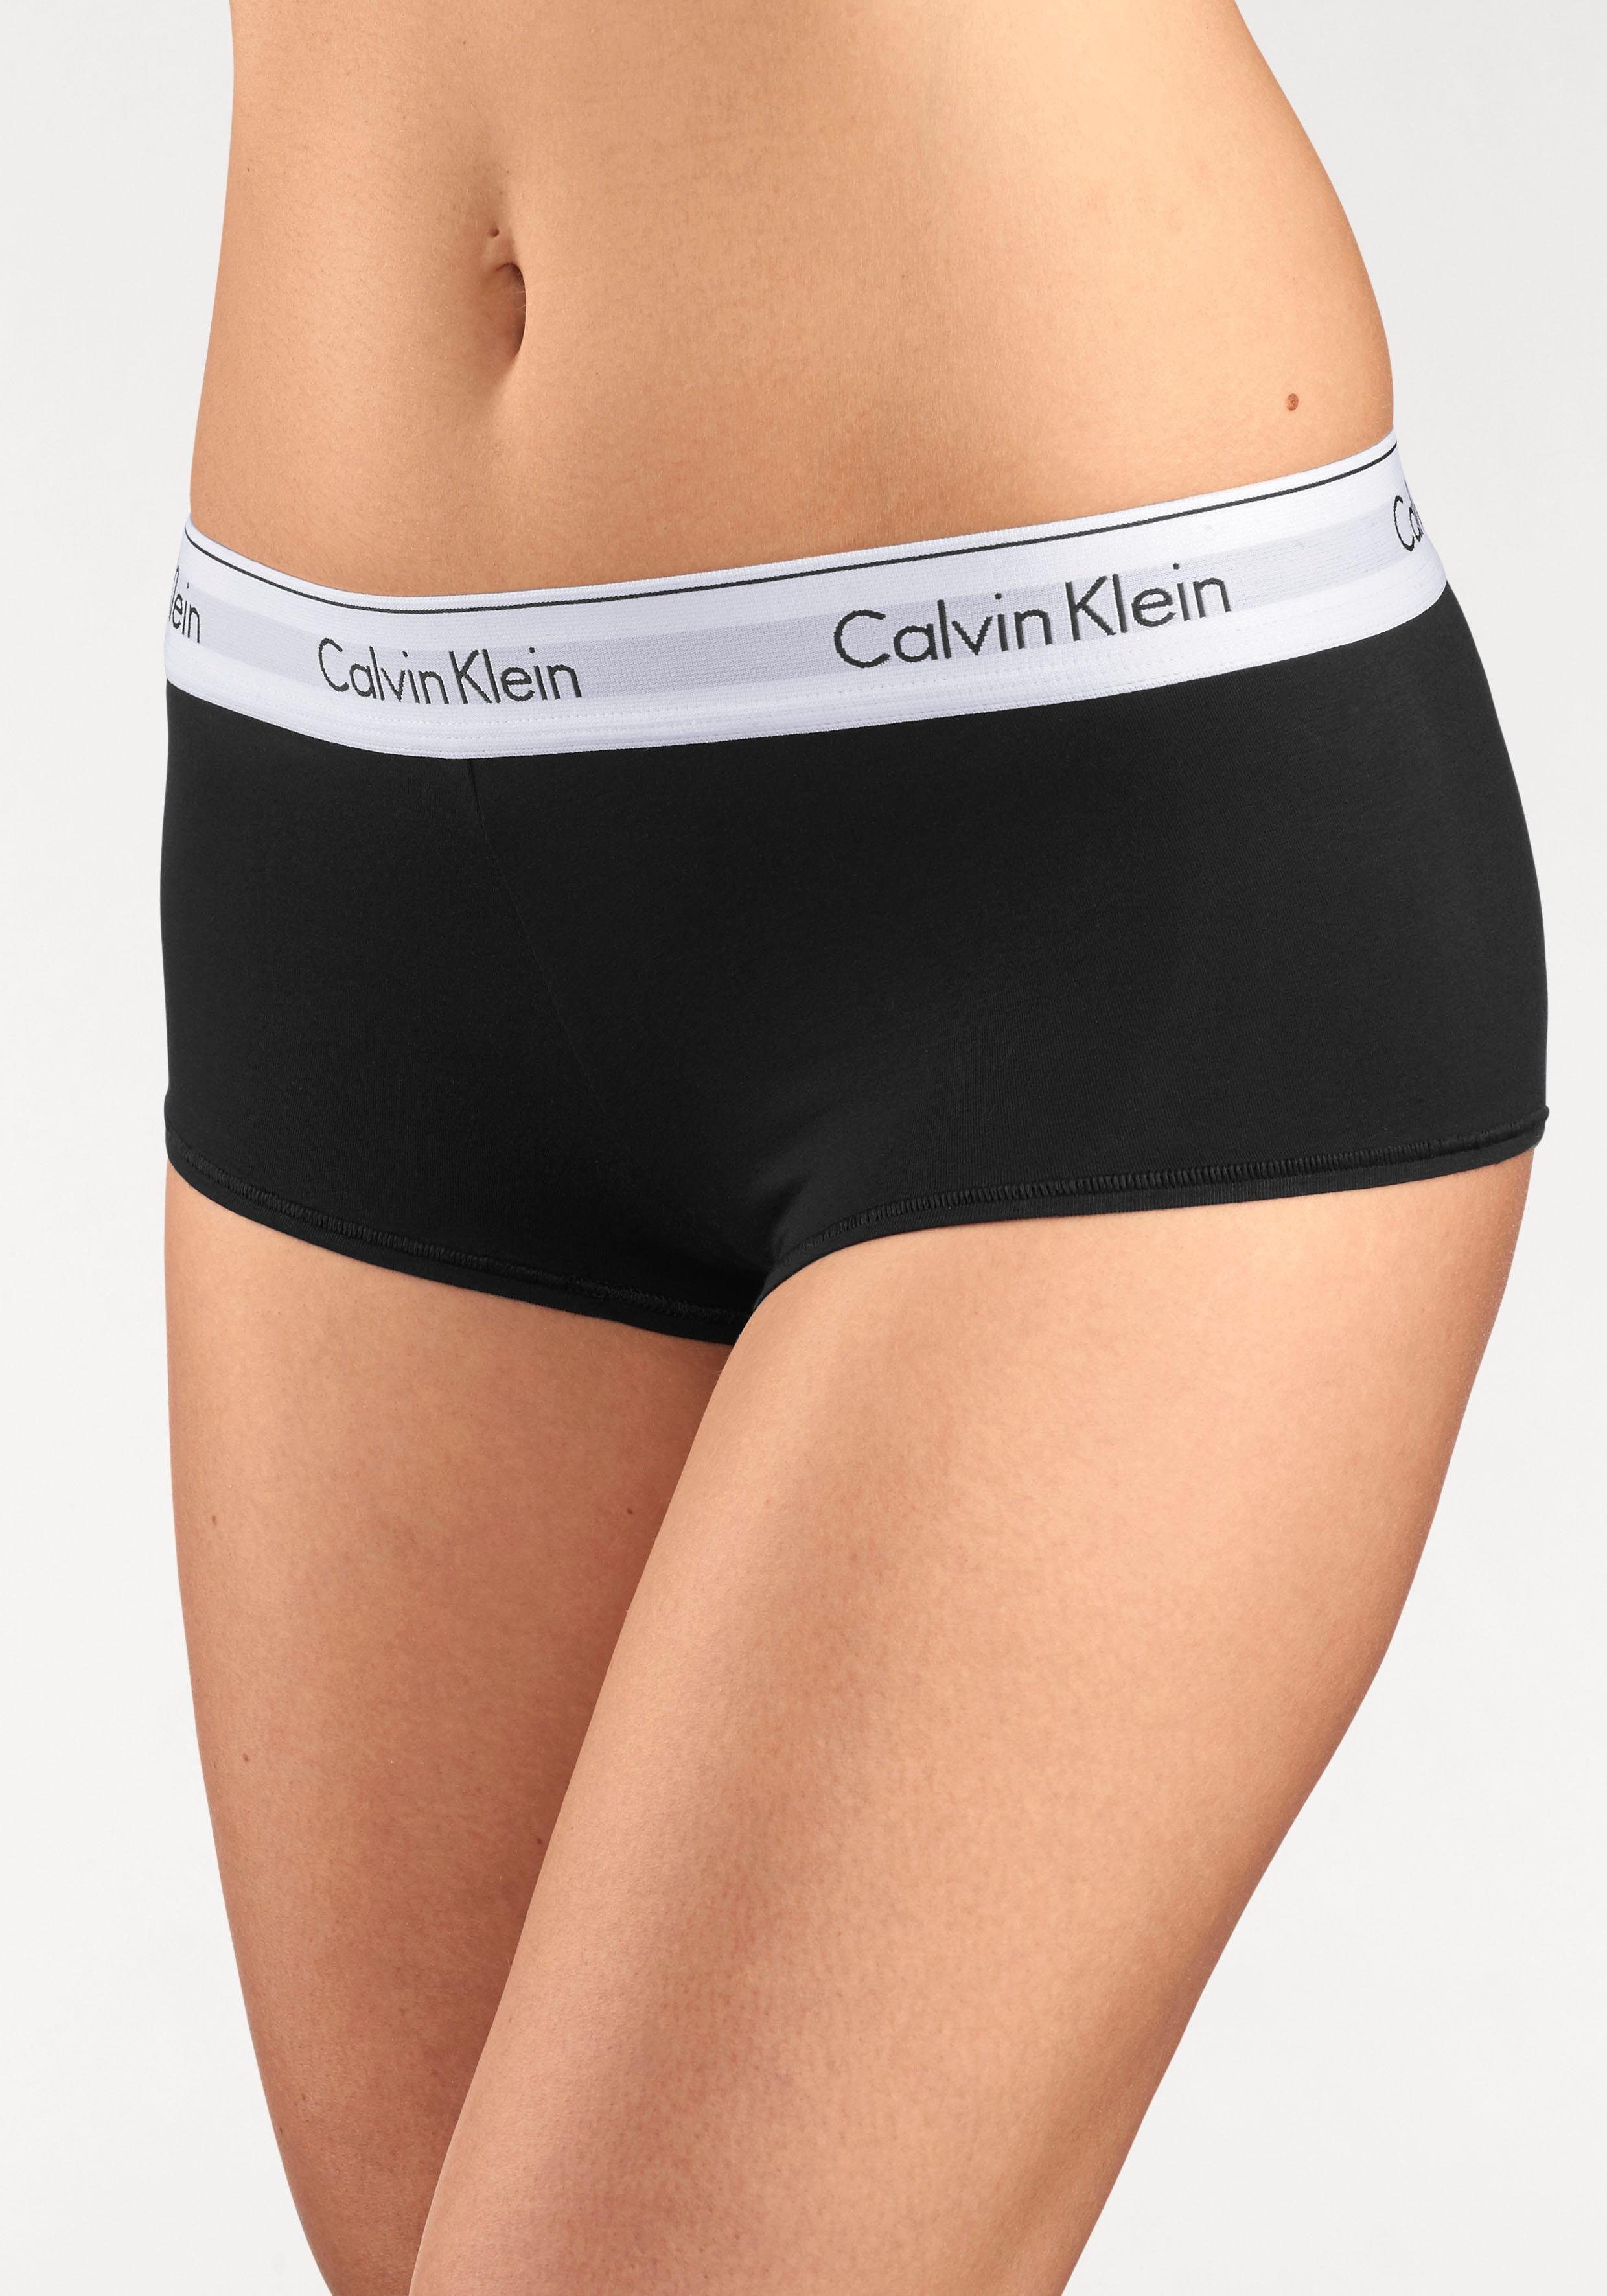 Calvin Klein Damenunterwäsche online kaufen | OTTO